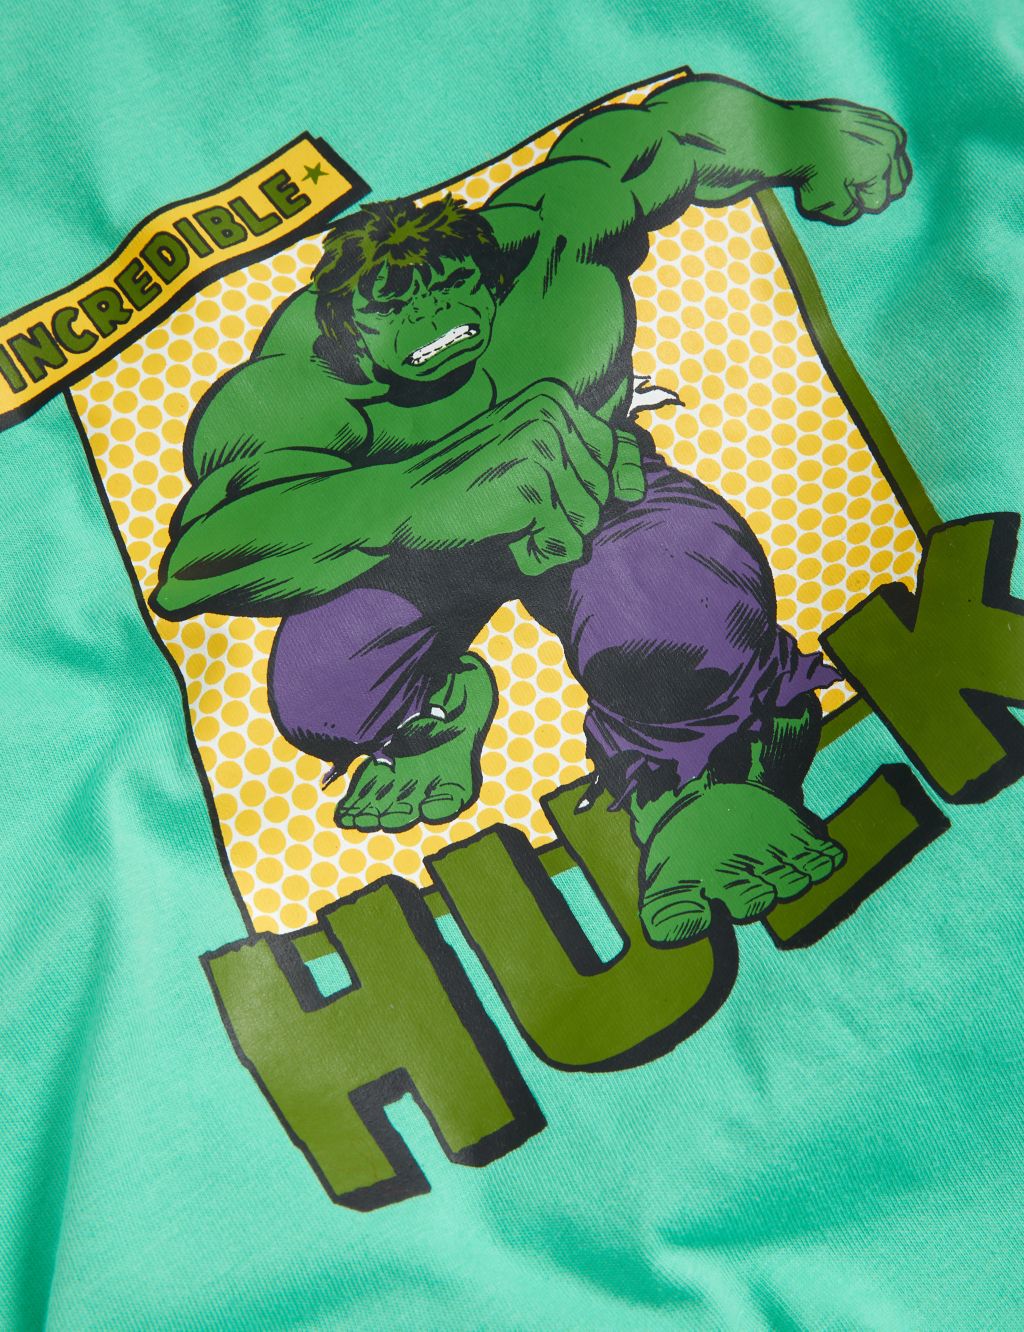 The Hulk™ Short Pyjama Set (3-12 Yrs) image 4